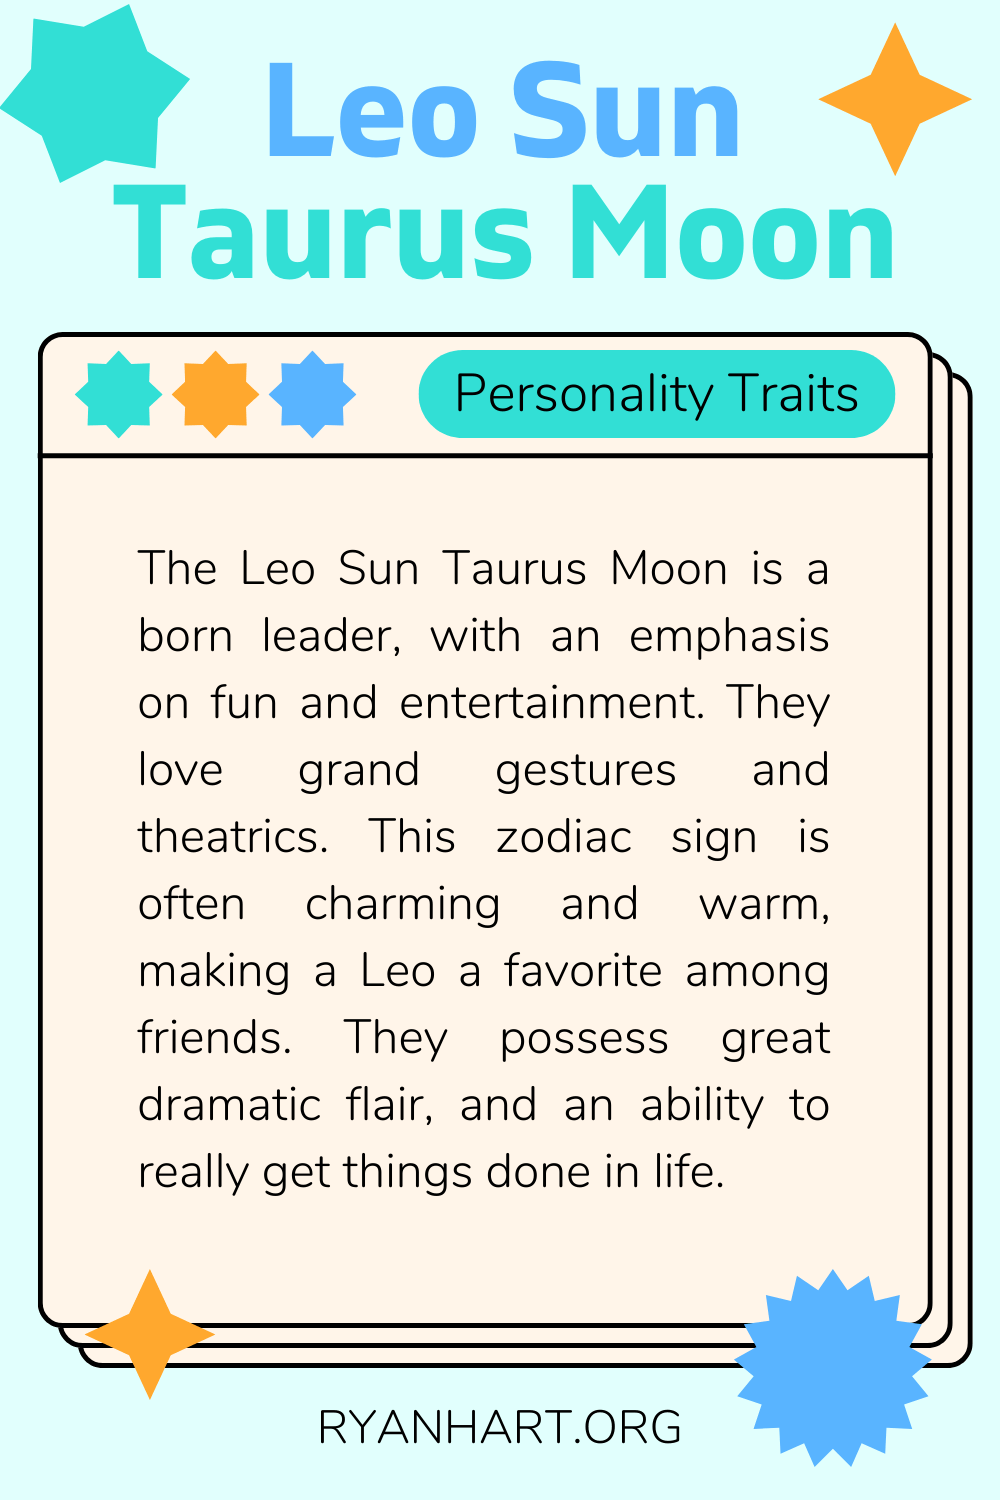 Leo Sun Taurus Moon Description